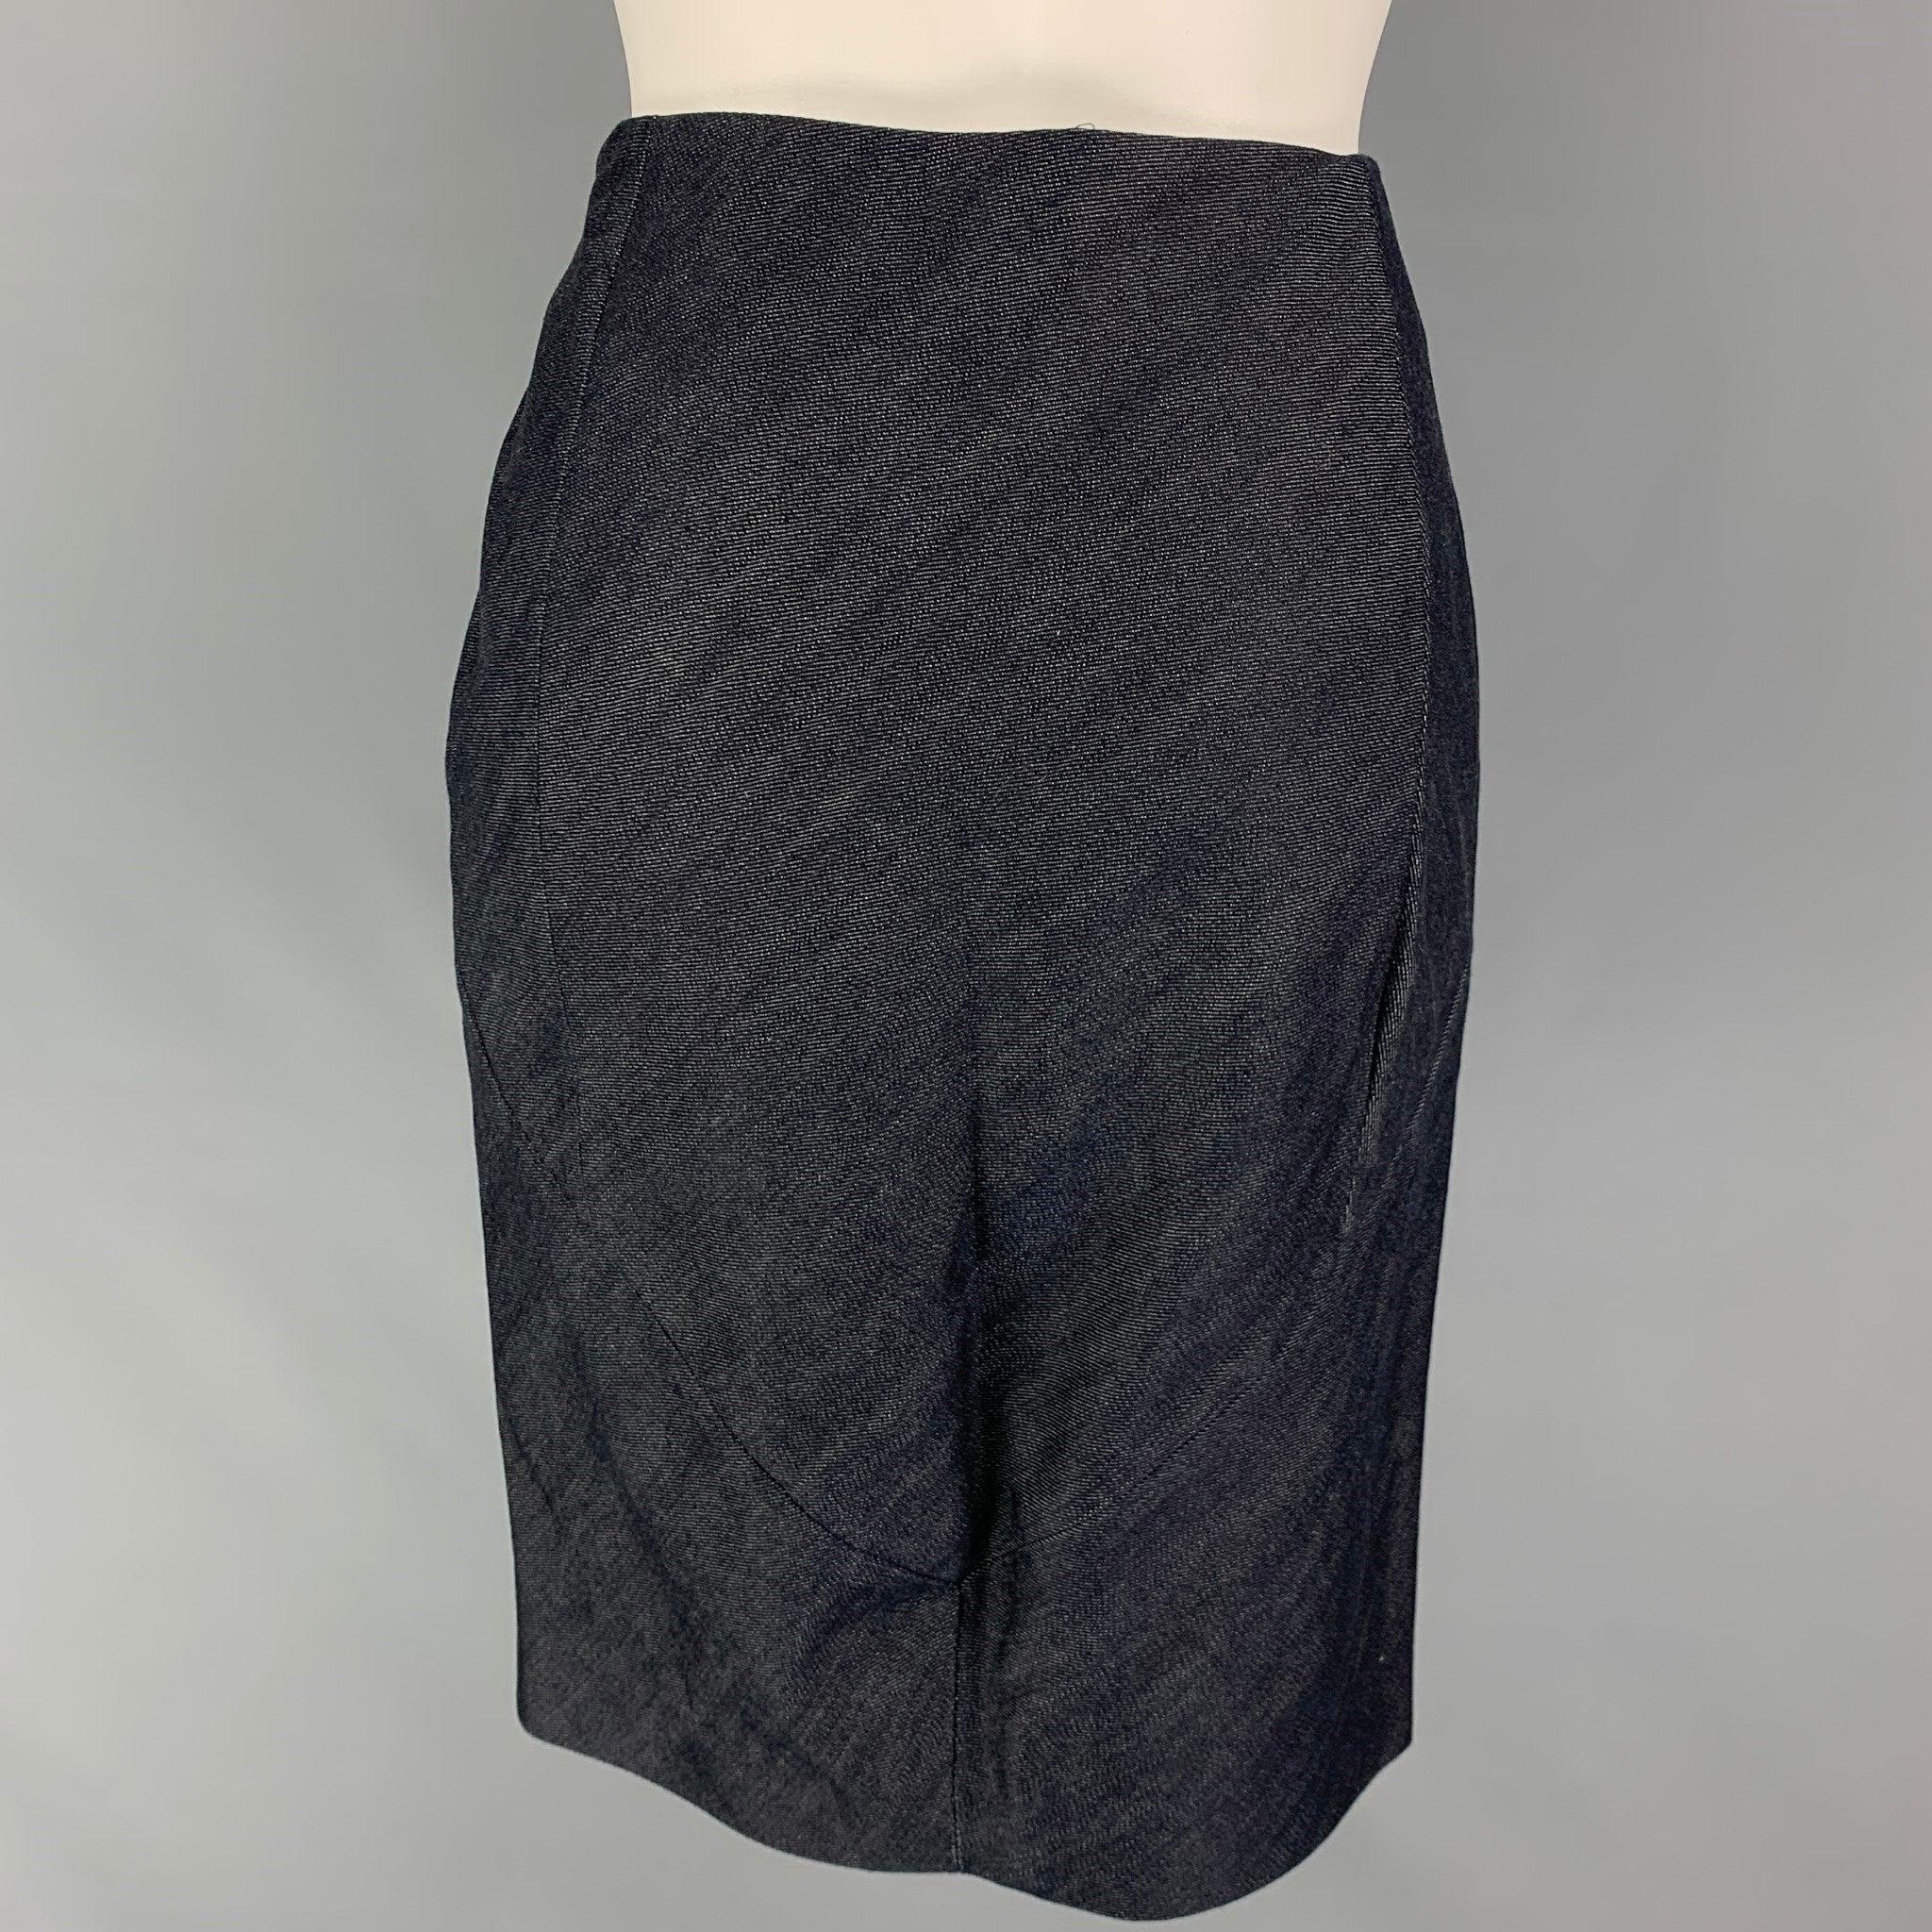 Black BALENCIAGA Size 4 Indigo Cotton Pencil Skirt